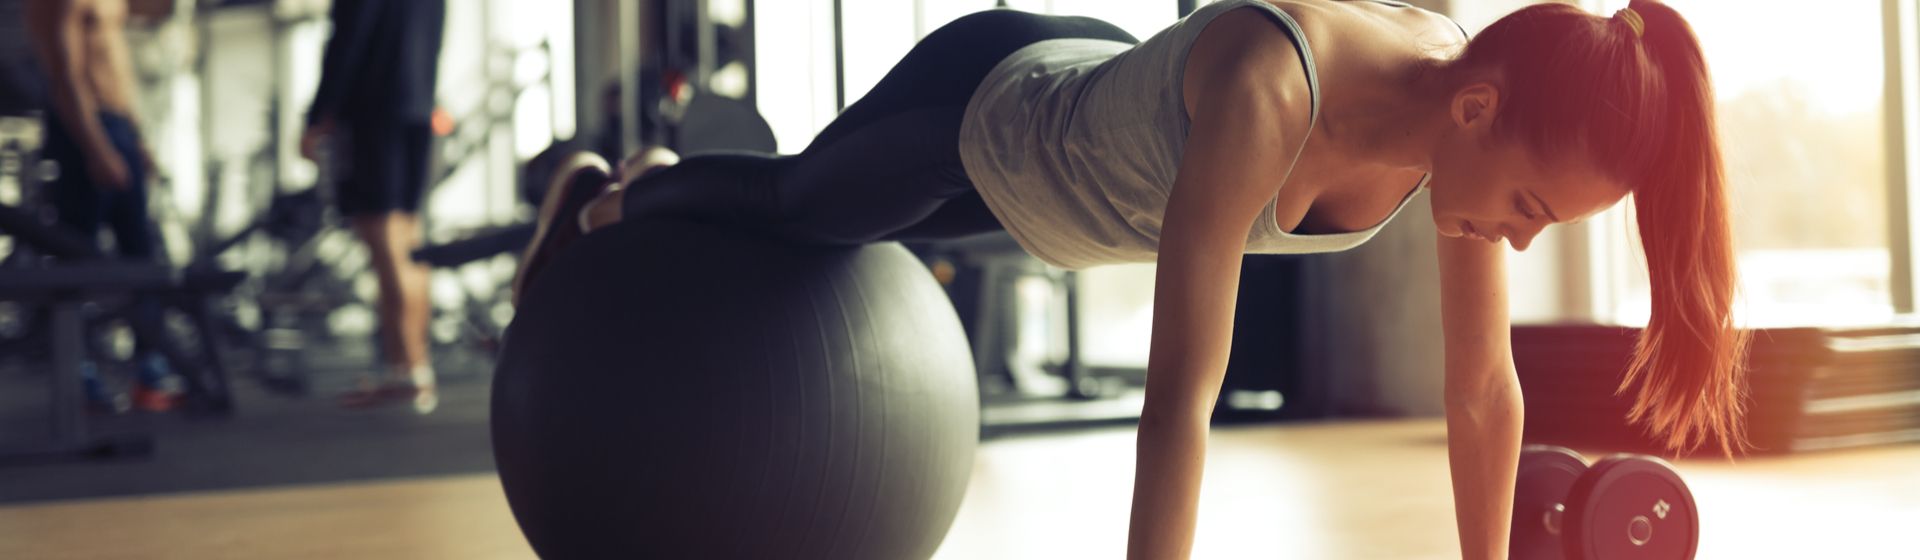 Aula de Pilates. Conheça os 14 Benefícios. Saiba Mais AQUI